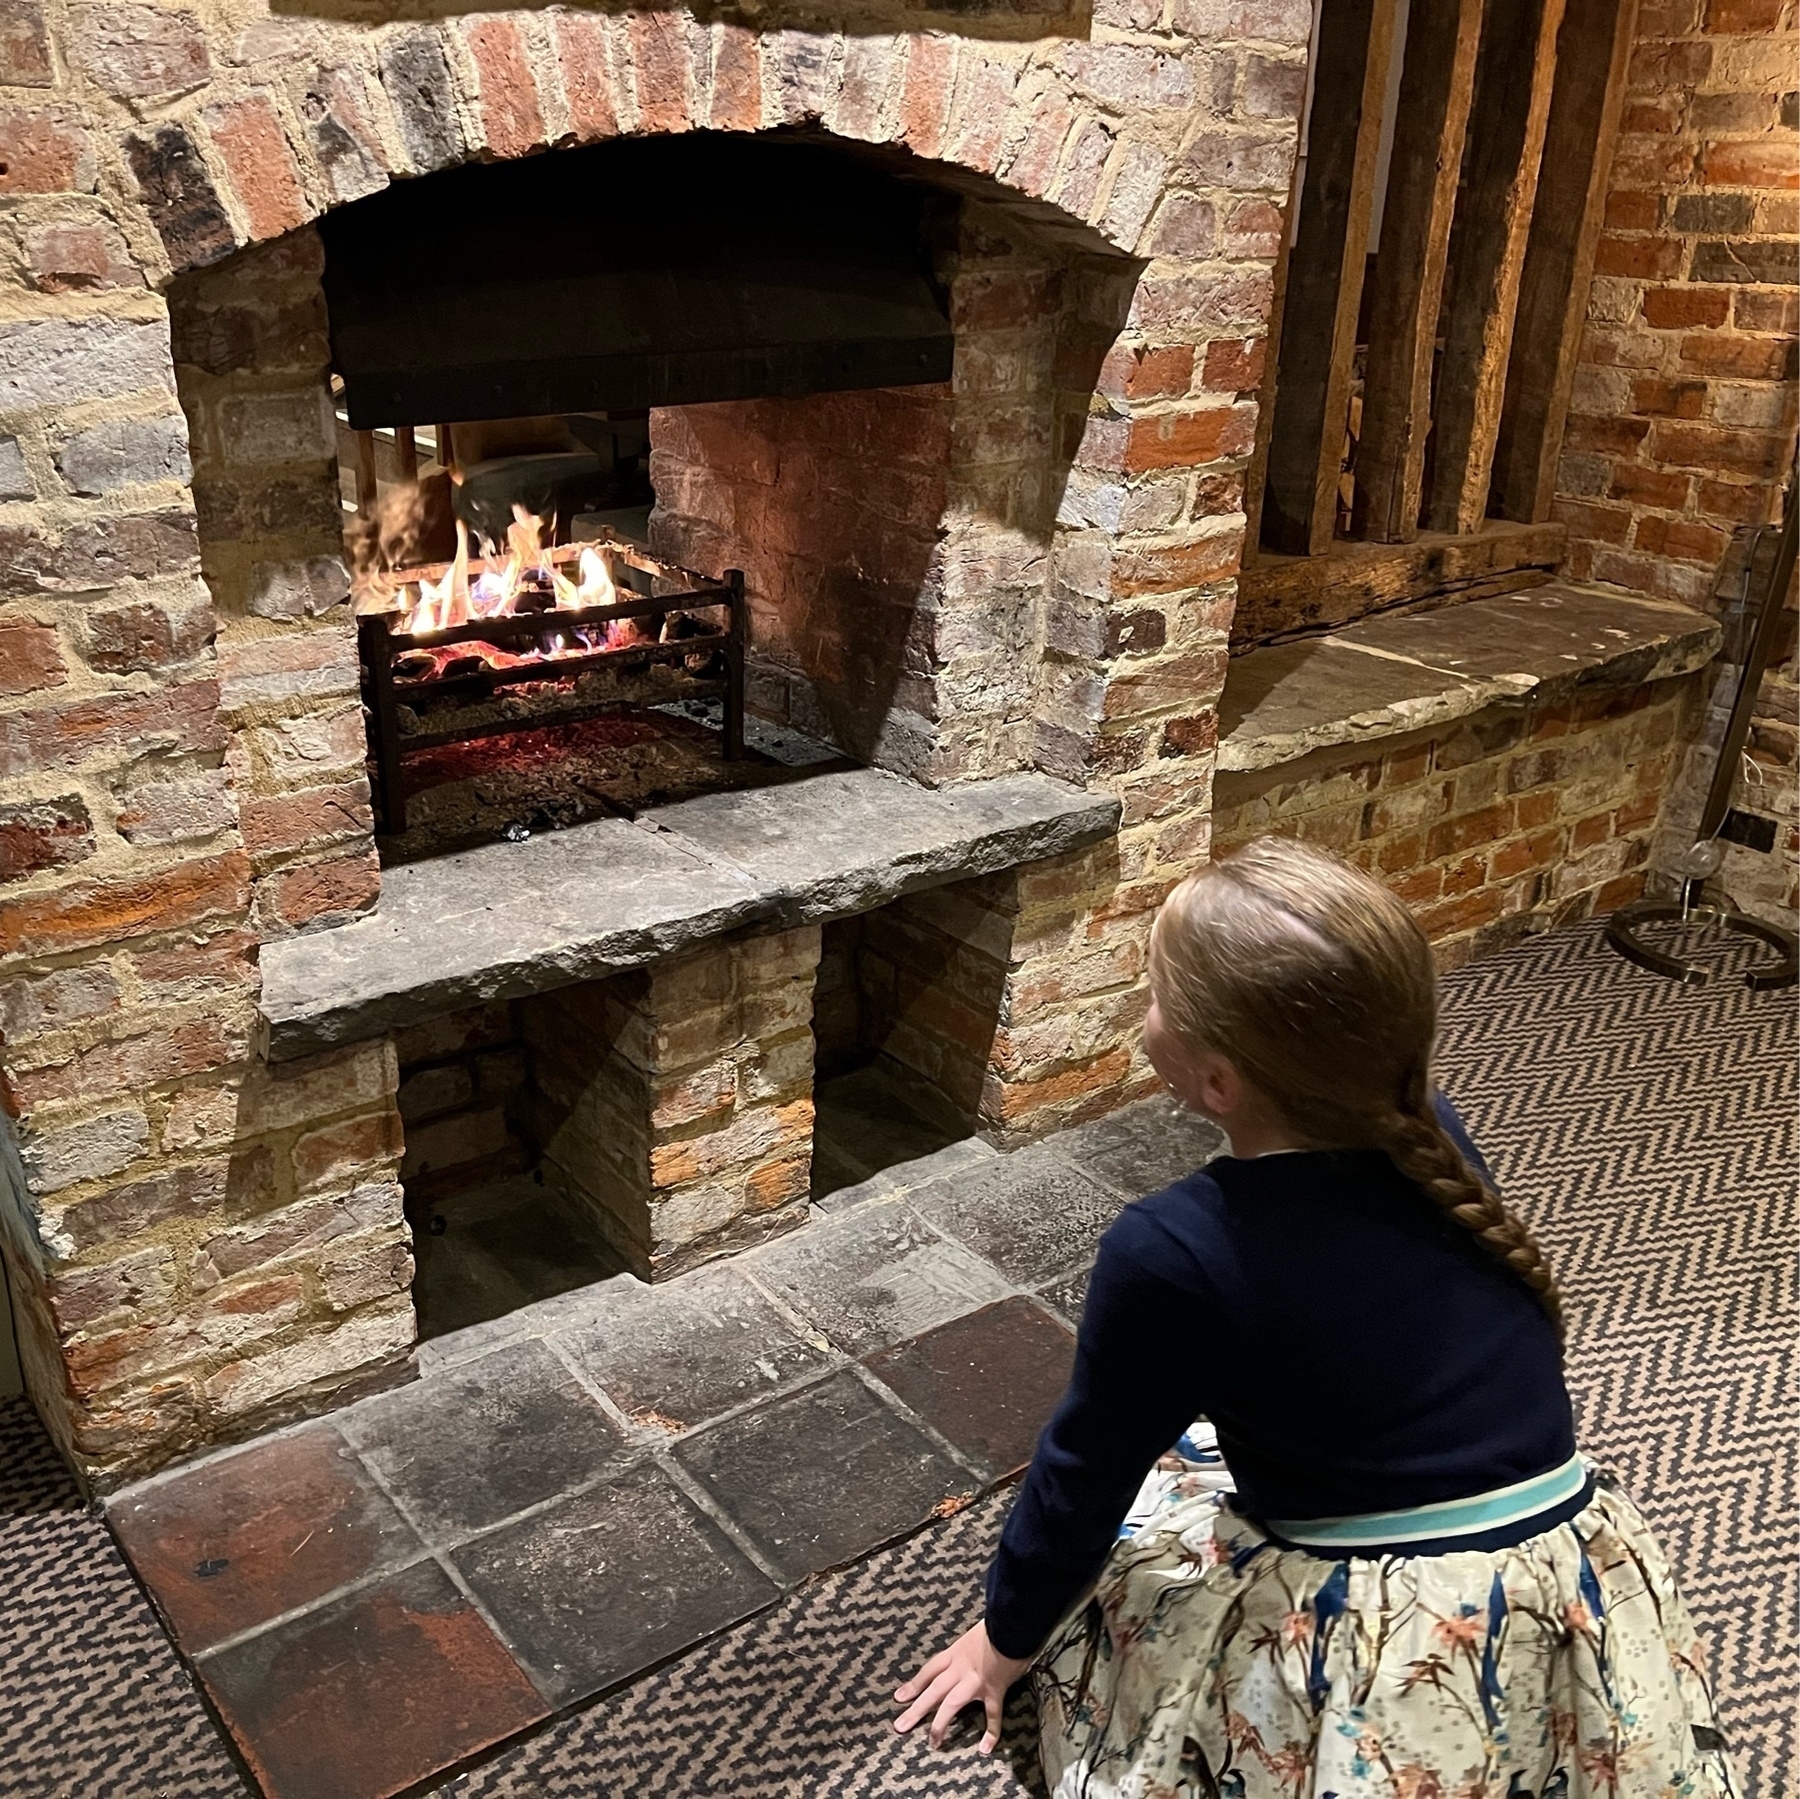 My daughter enjoying an open fire in a pub. 